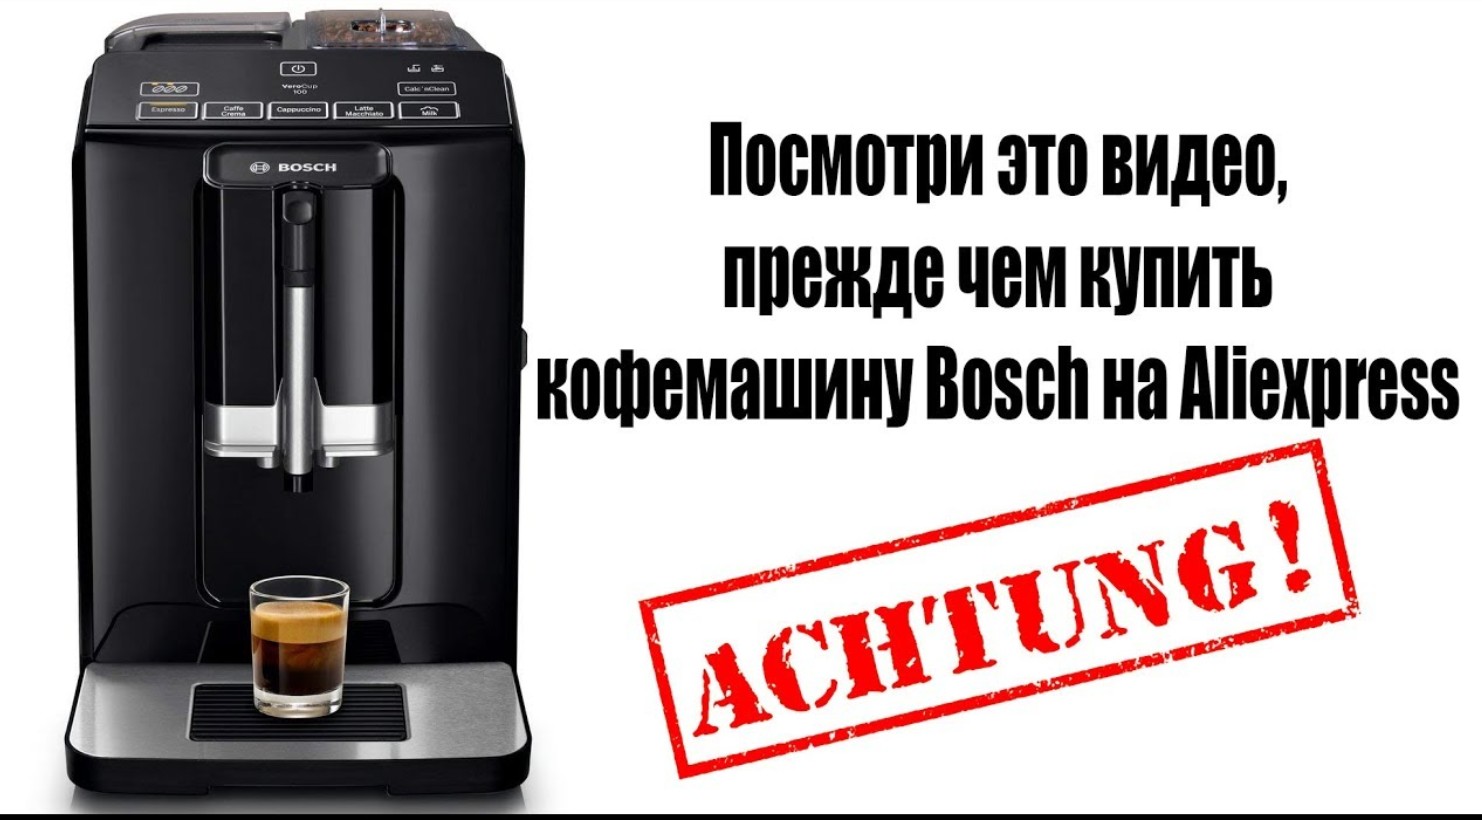 Ремонт кофемашины Bosch своими руками (причины)